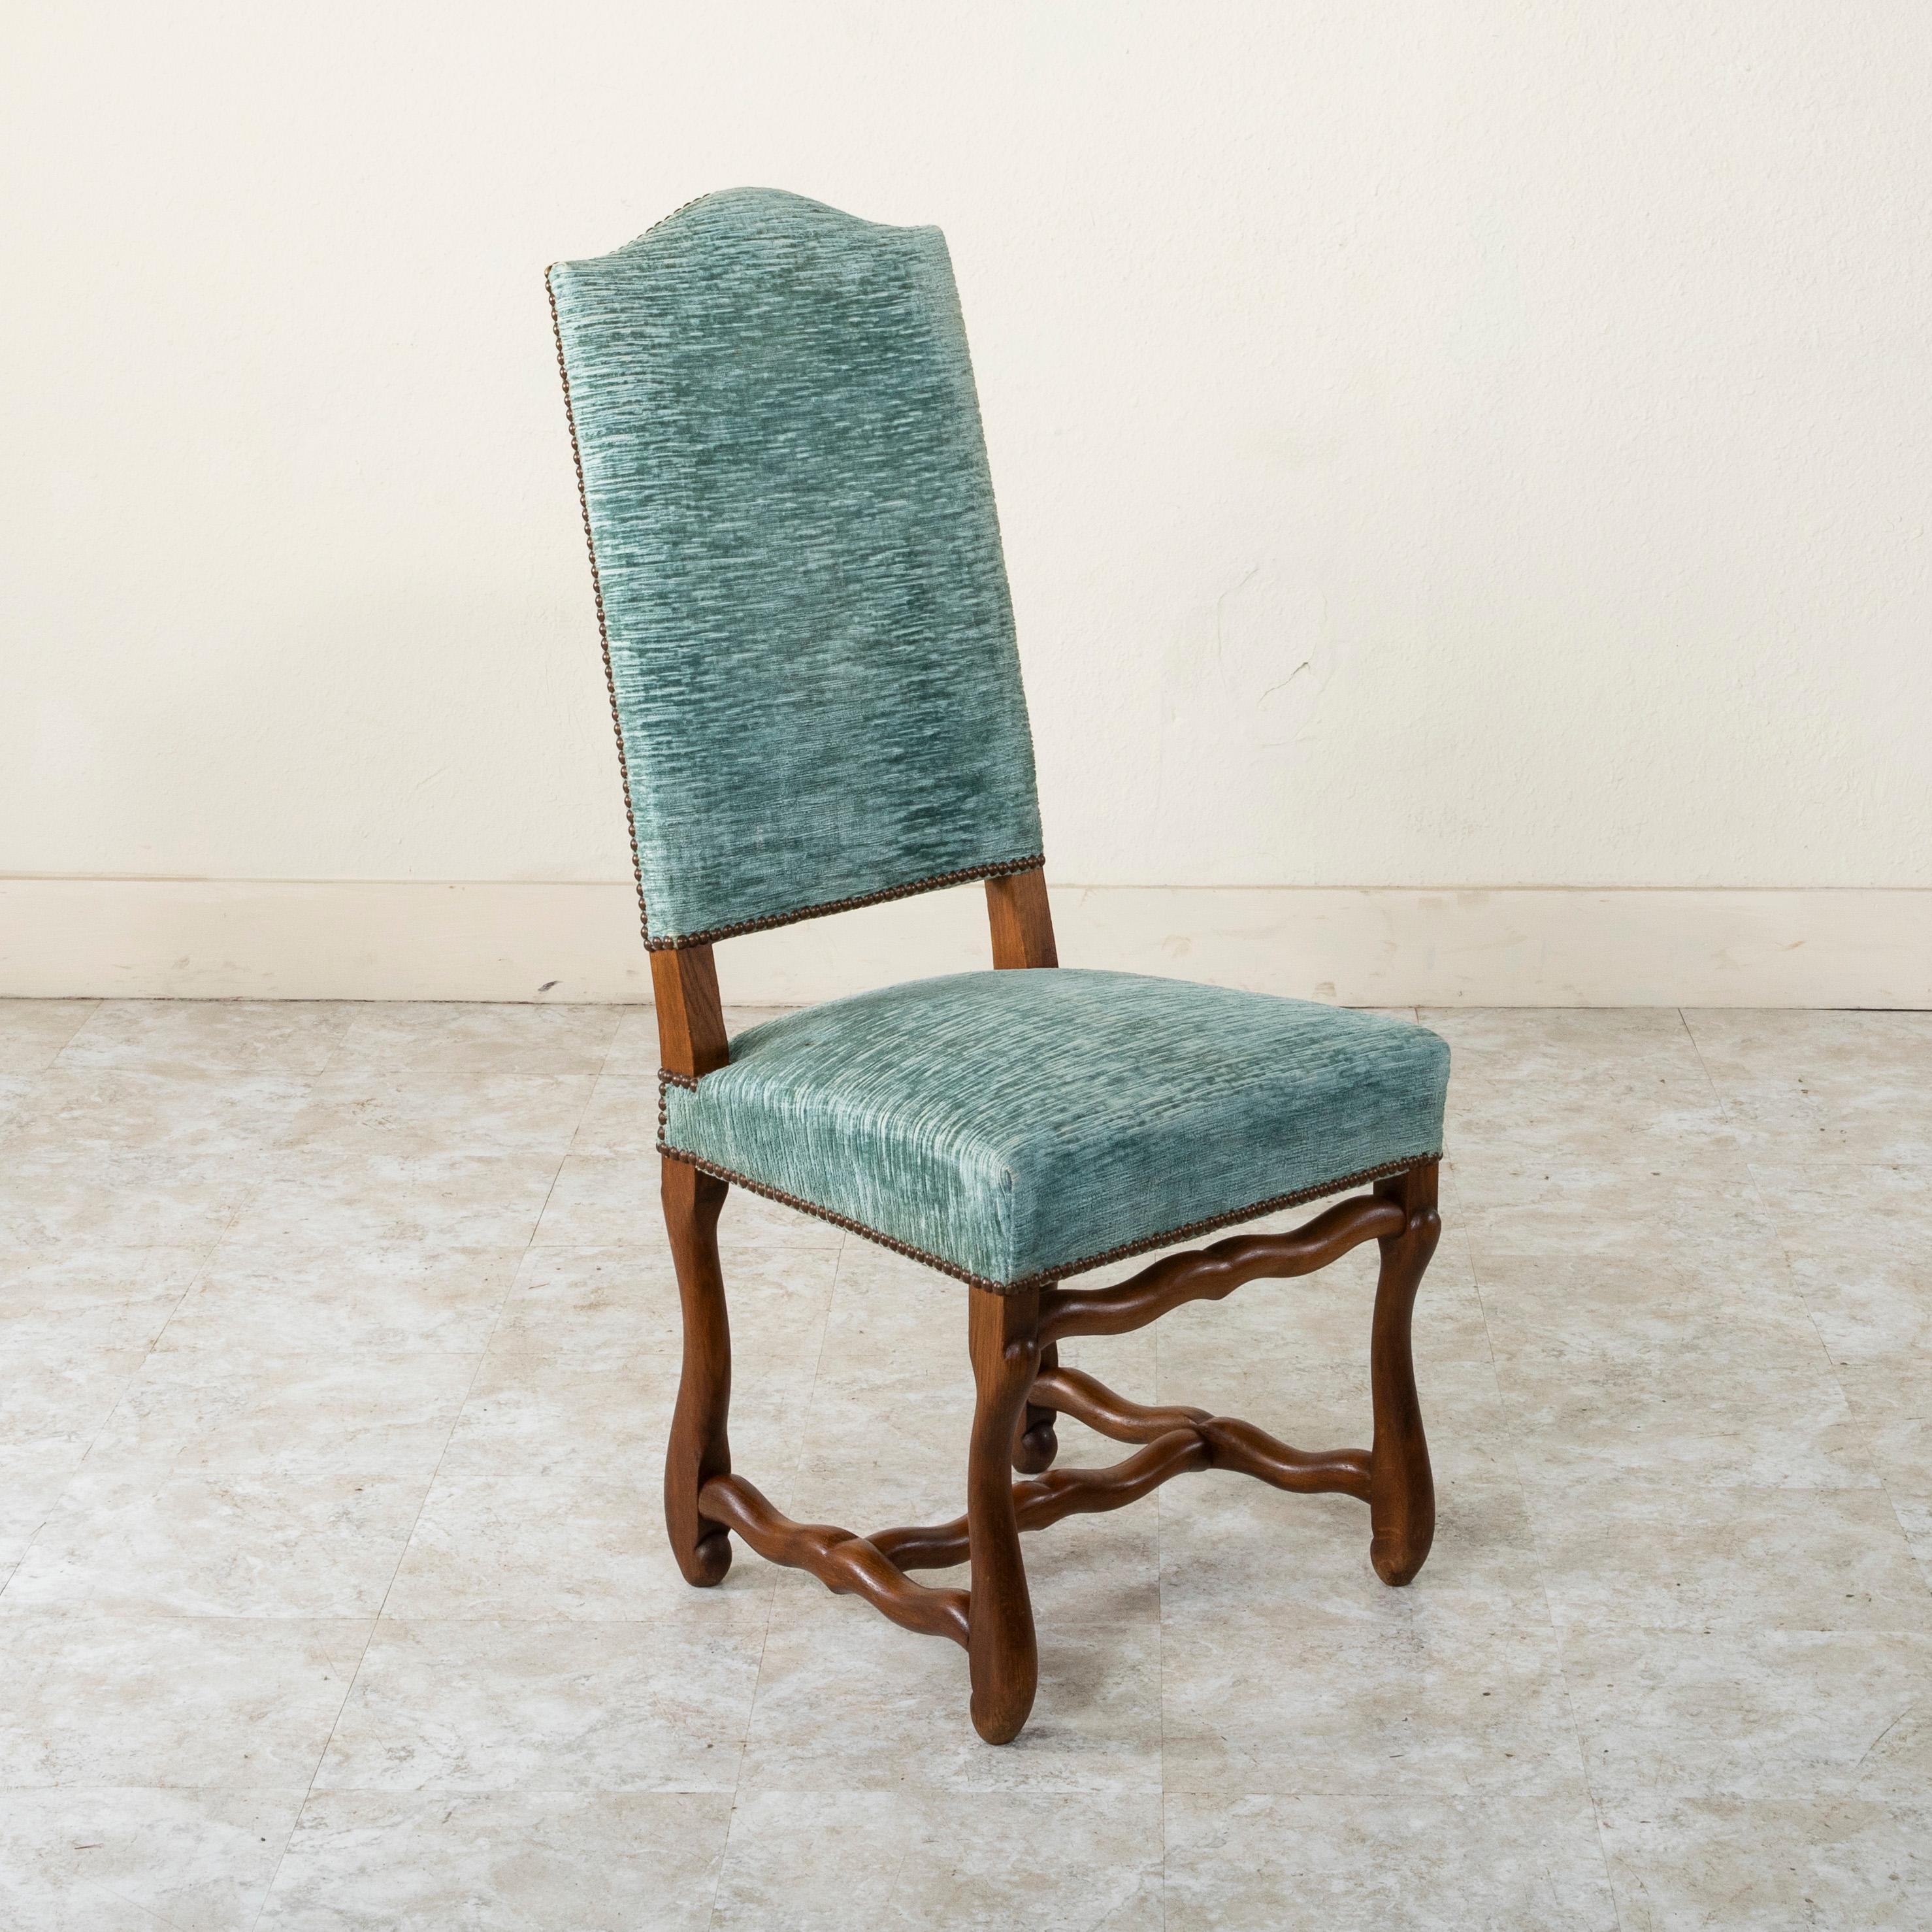 Cet ensemble de huit chaises d'appoint ou chaises de salle à manger en chêne français, datant du milieu du XXe siècle, est fabriqué à la main. Ces chaises de salle à manger hautes à dossier arqué sont revêtues d'un mohair bleu et finies avec une